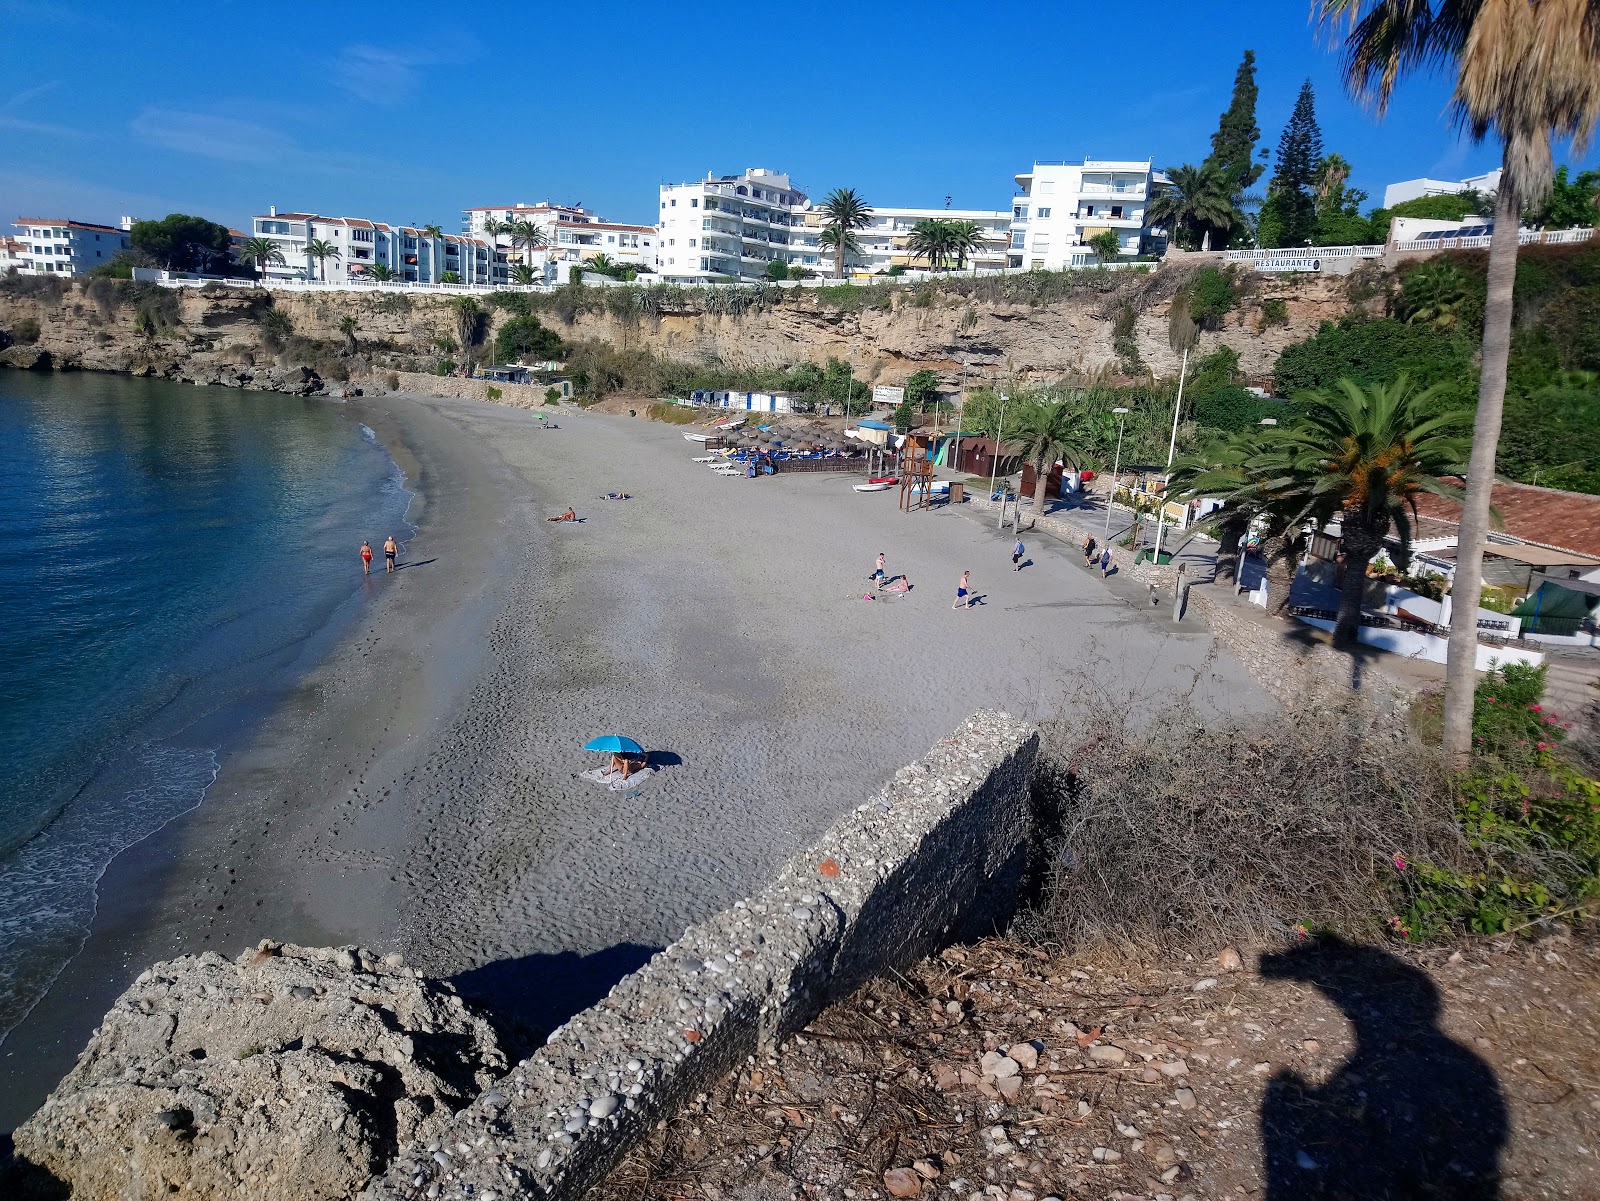 Playa la Caletilla'in fotoğrafı gri kum yüzey ile